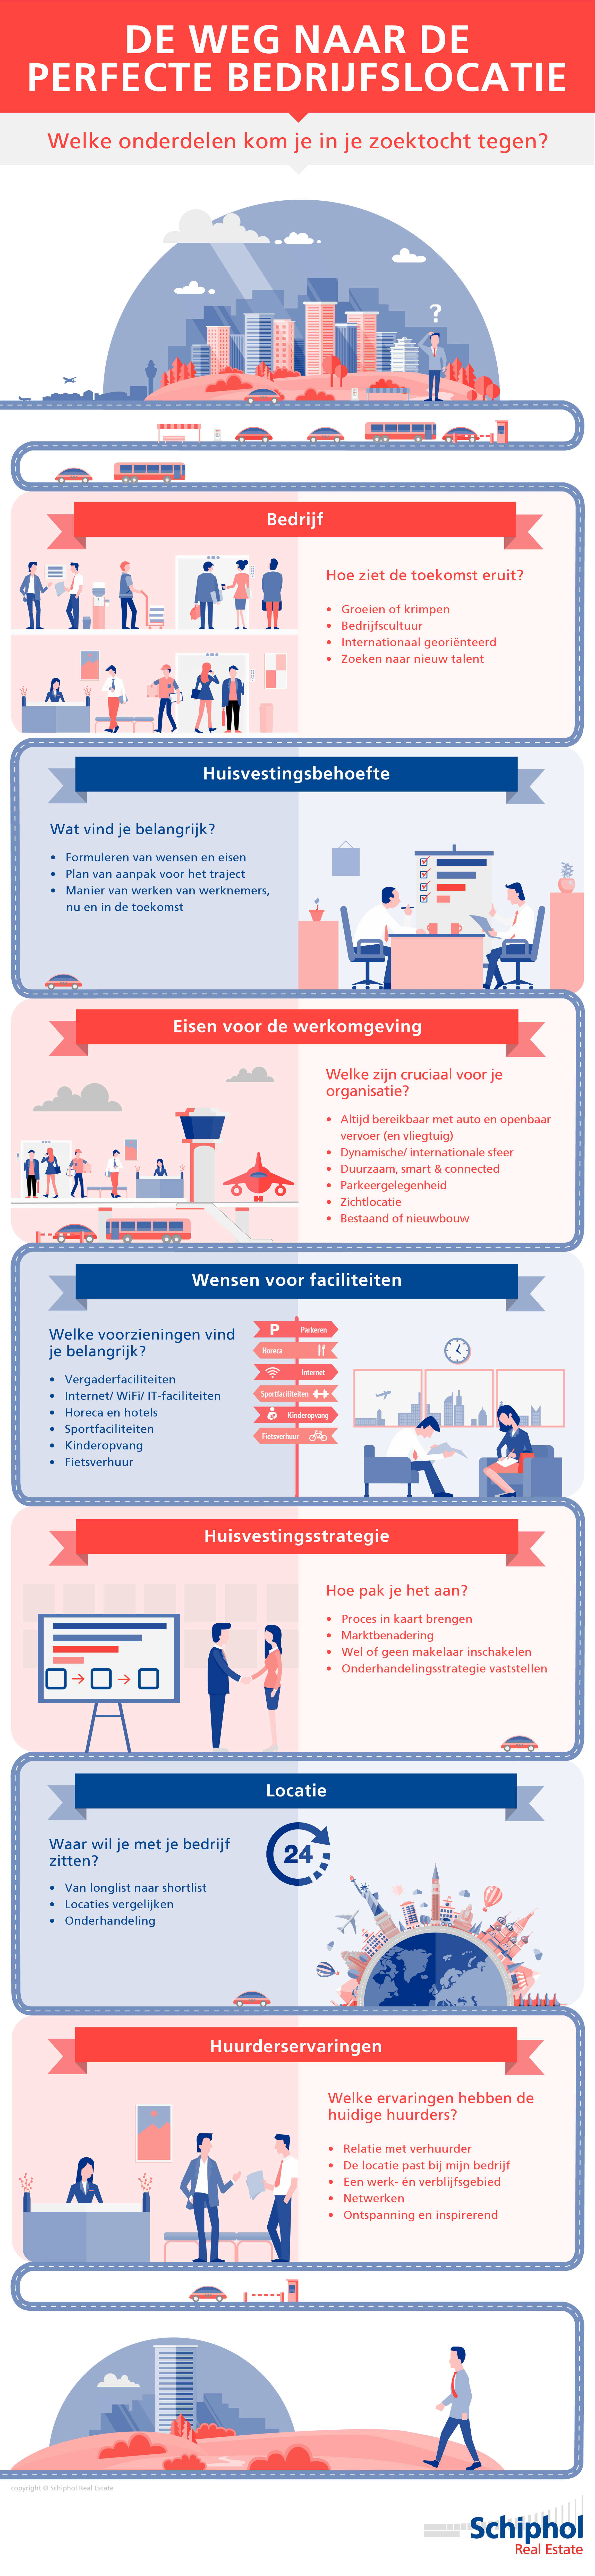 schiphol-real-estate-Infographic-perfecte-bedrijfslocatie